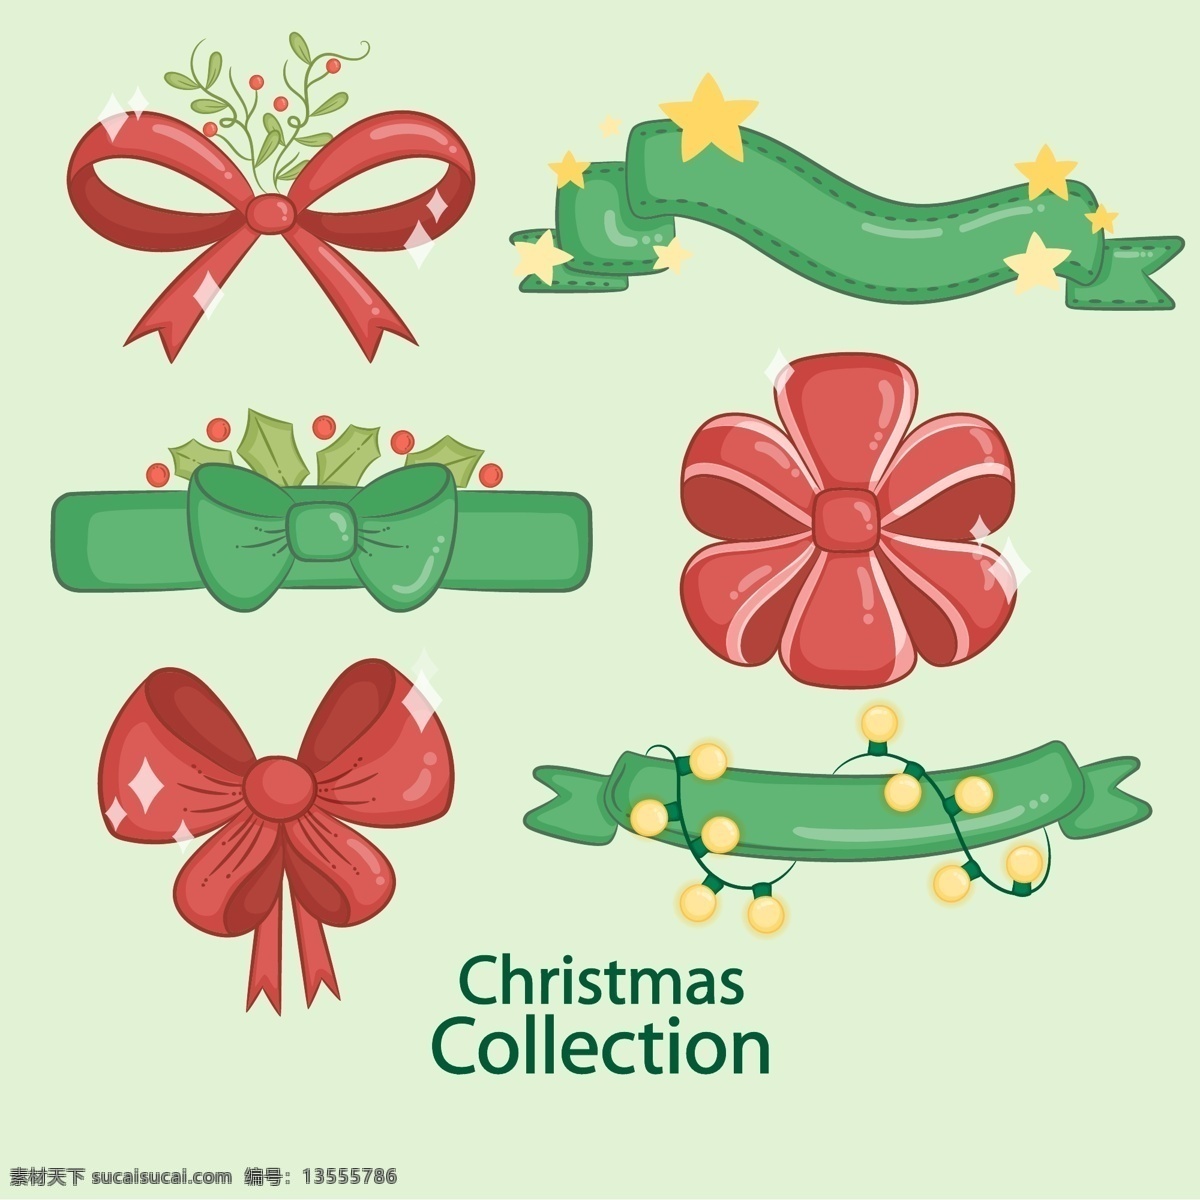 绿色 红色 圣诞 元素 丝带 圣诞节 矢量素材 蝴蝶结 装饰素材 ai素材